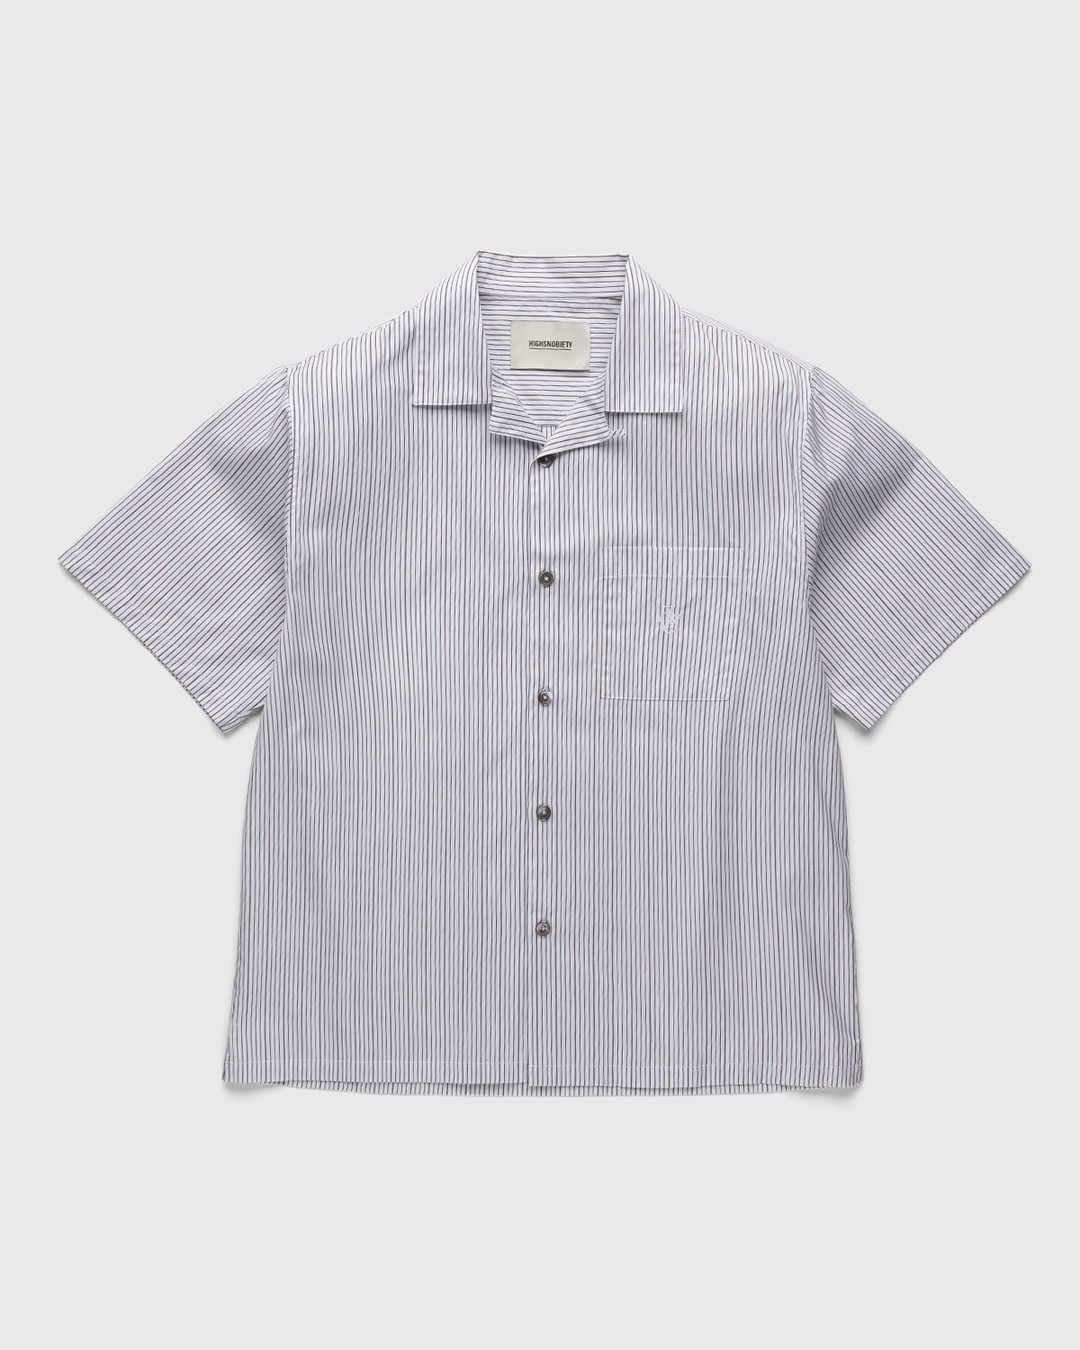 Highsnobiety – Striped Poplin Short-Sleeve Shirt White/Black - Shortsleeve Shirts - White - Image 1